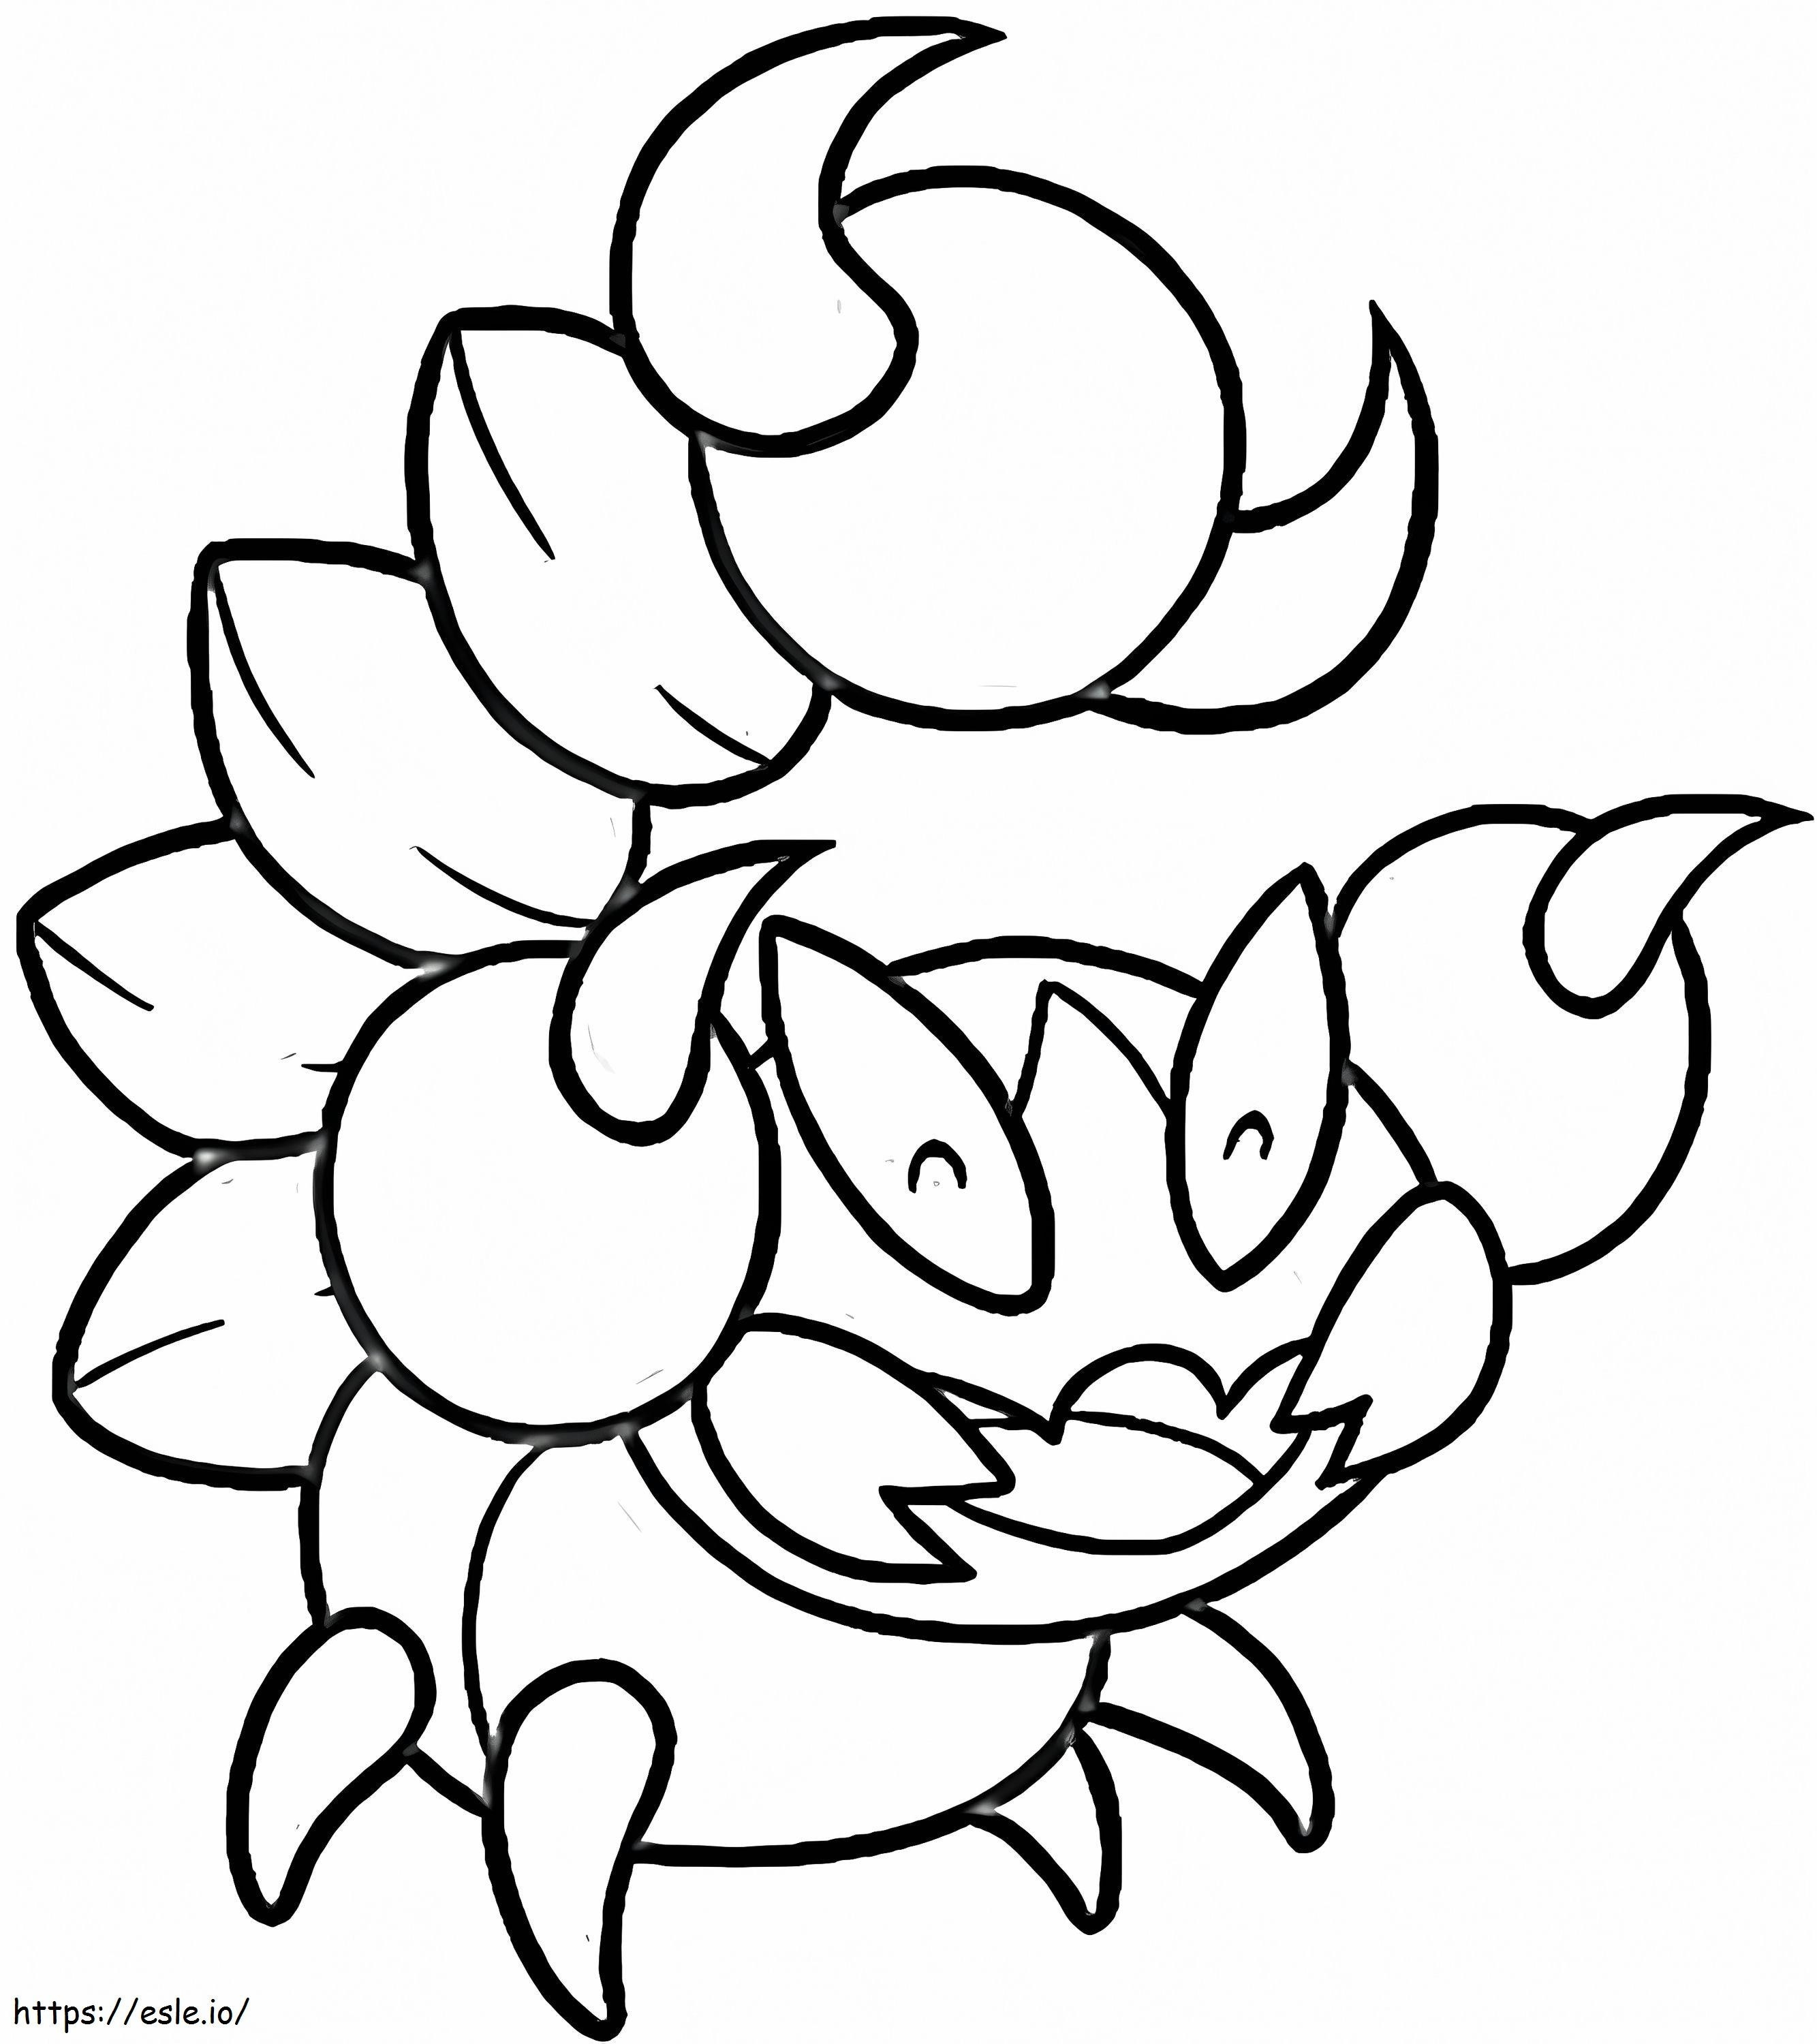 Coloriage Pokémon Shell Gen 4 à imprimer dessin